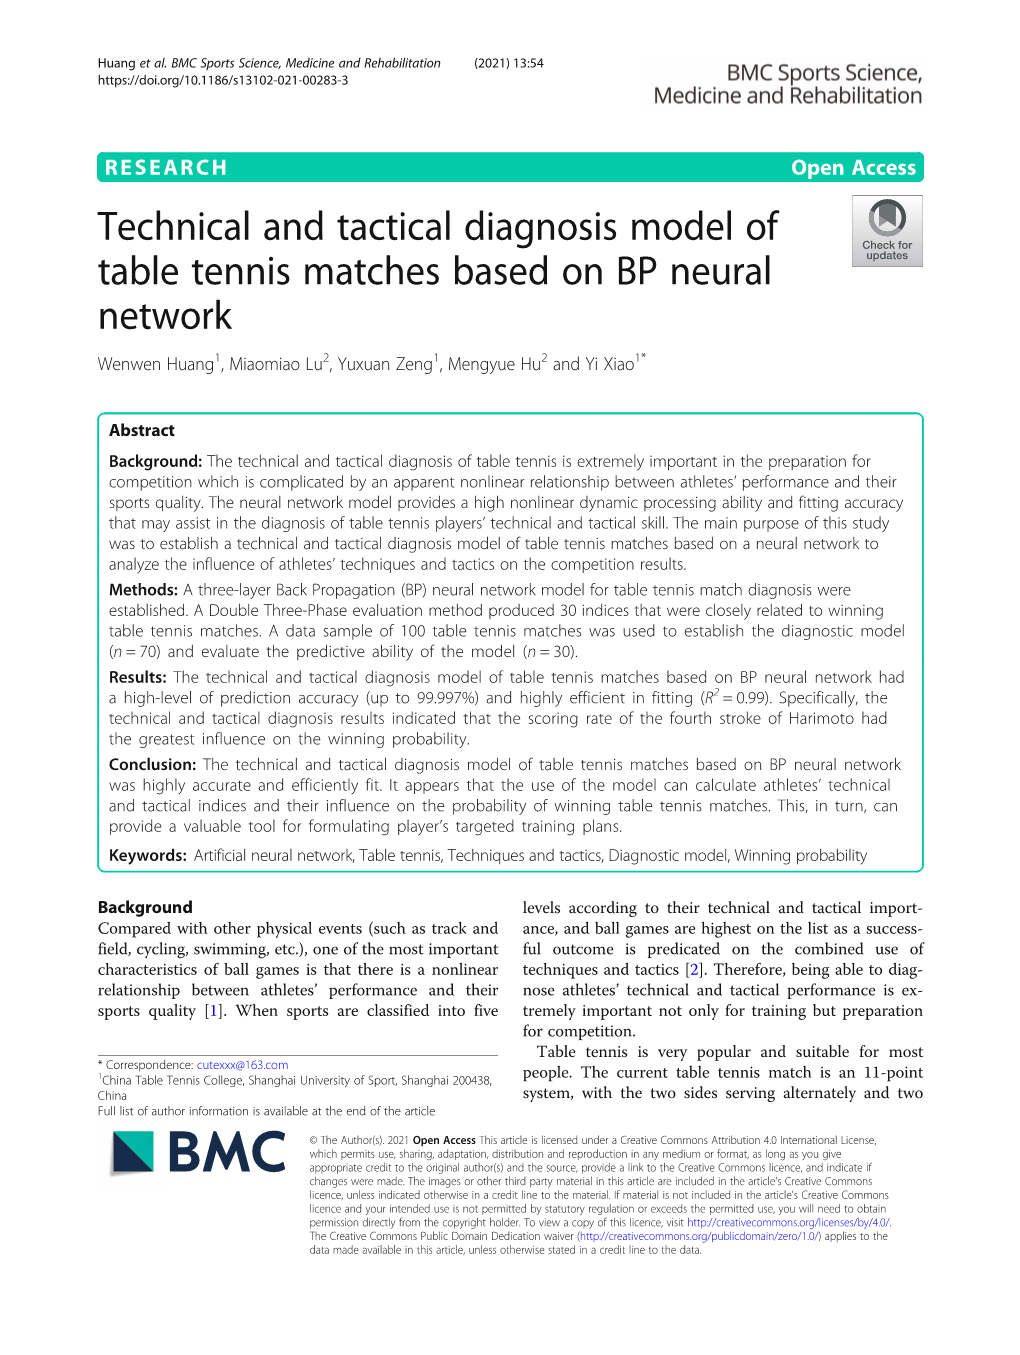 Technical and Tactical Diagnosis Model of Table Tennis Matches Based on BP Neural Network Wenwen Huang1, Miaomiao Lu2, Yuxuan Zeng1, Mengyue Hu2 and Yi Xiao1*